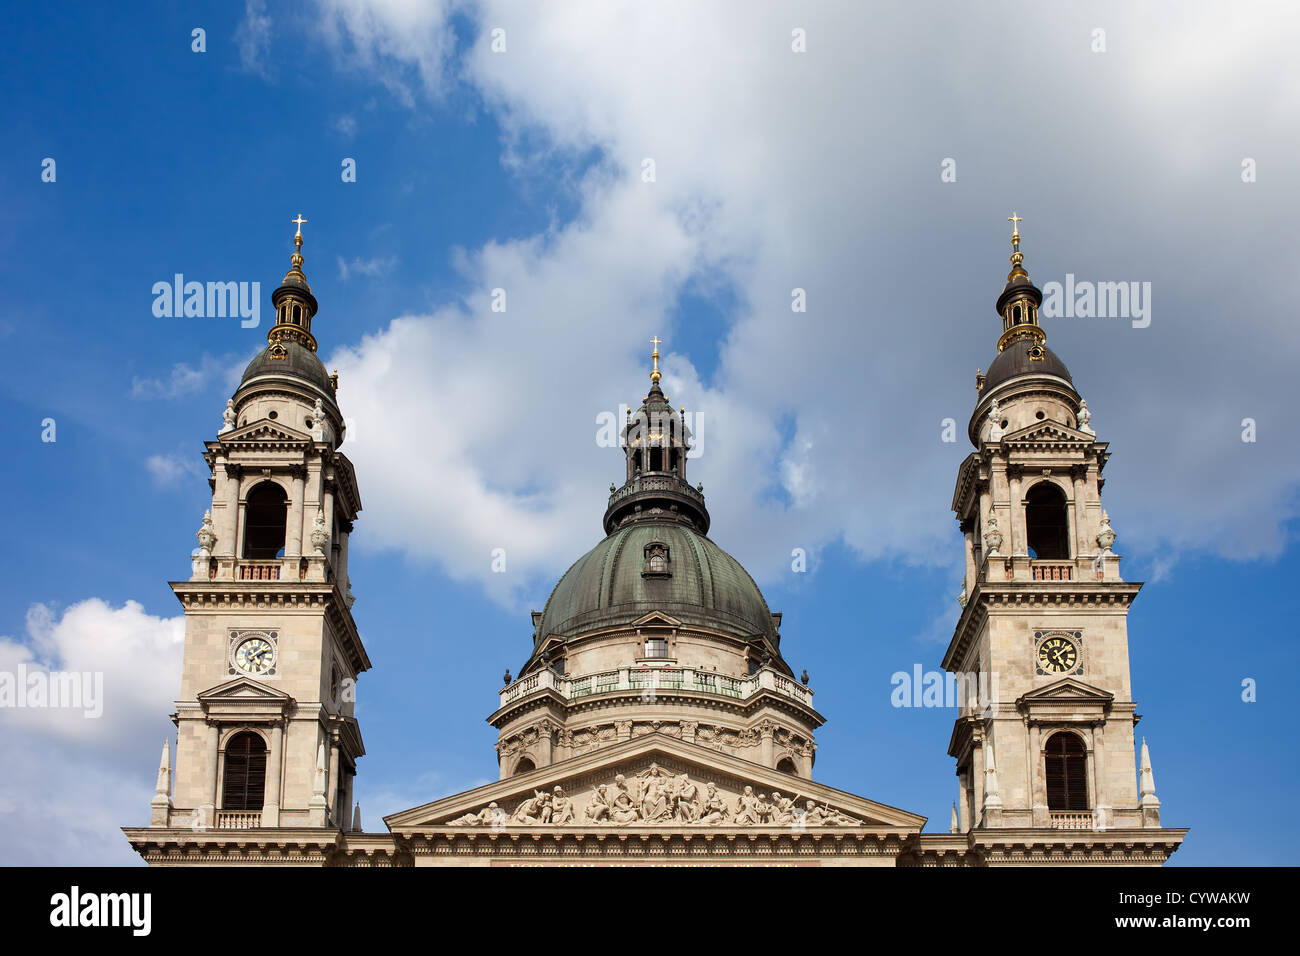 Dome, campanili e il frontone di stile neoclassico. St Stephen's basilica di budapest, Ungheria. Foto Stock